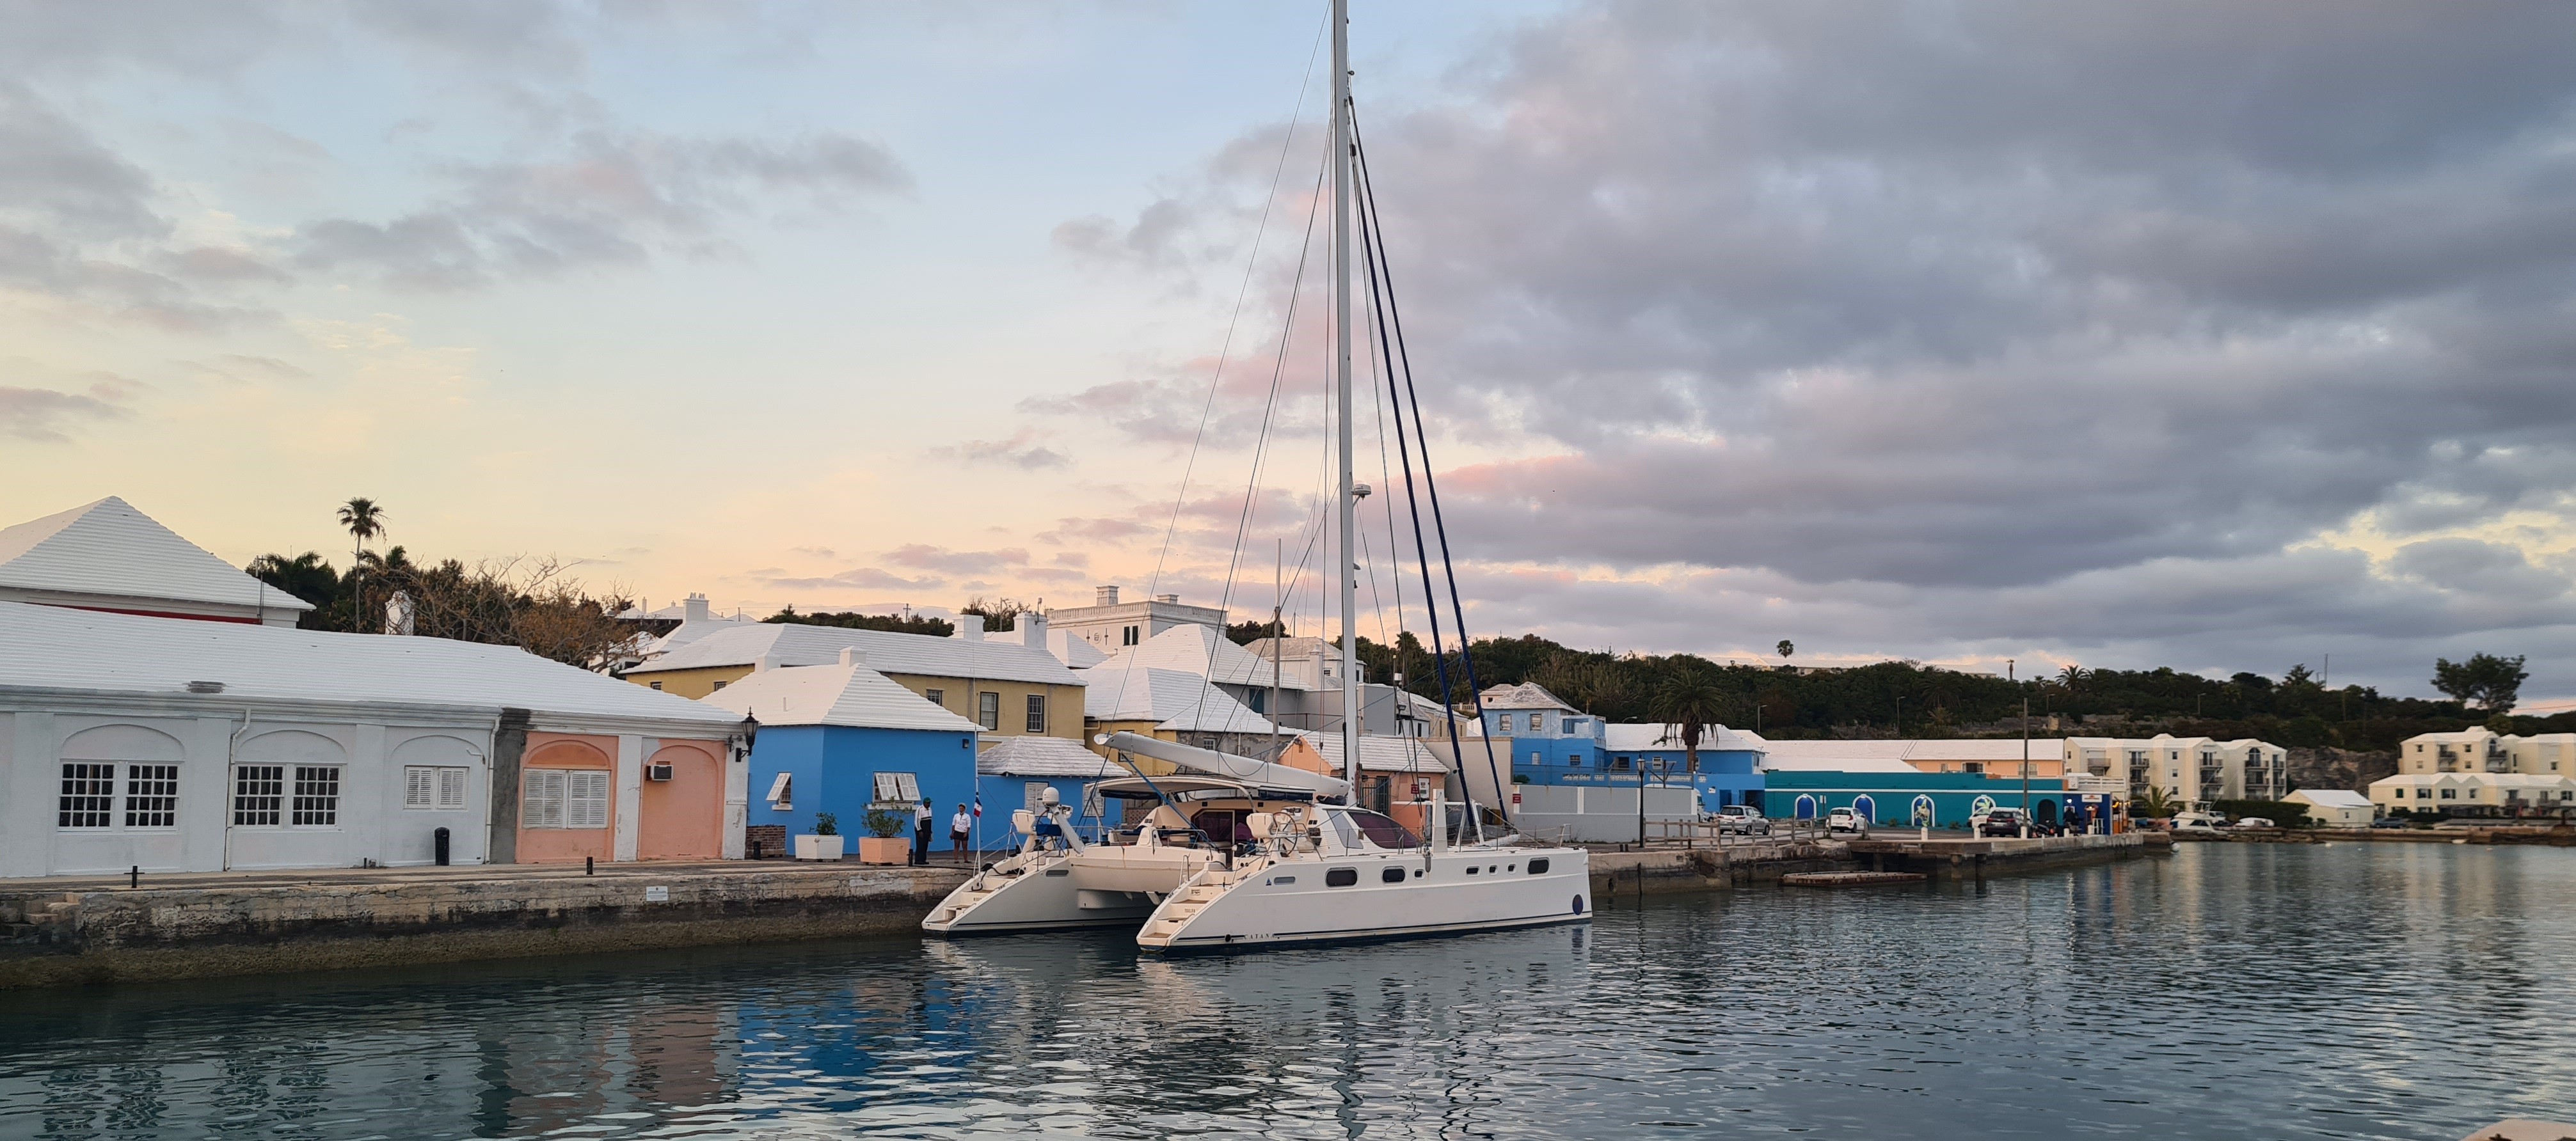 Catana 582 in Bermuda Islands